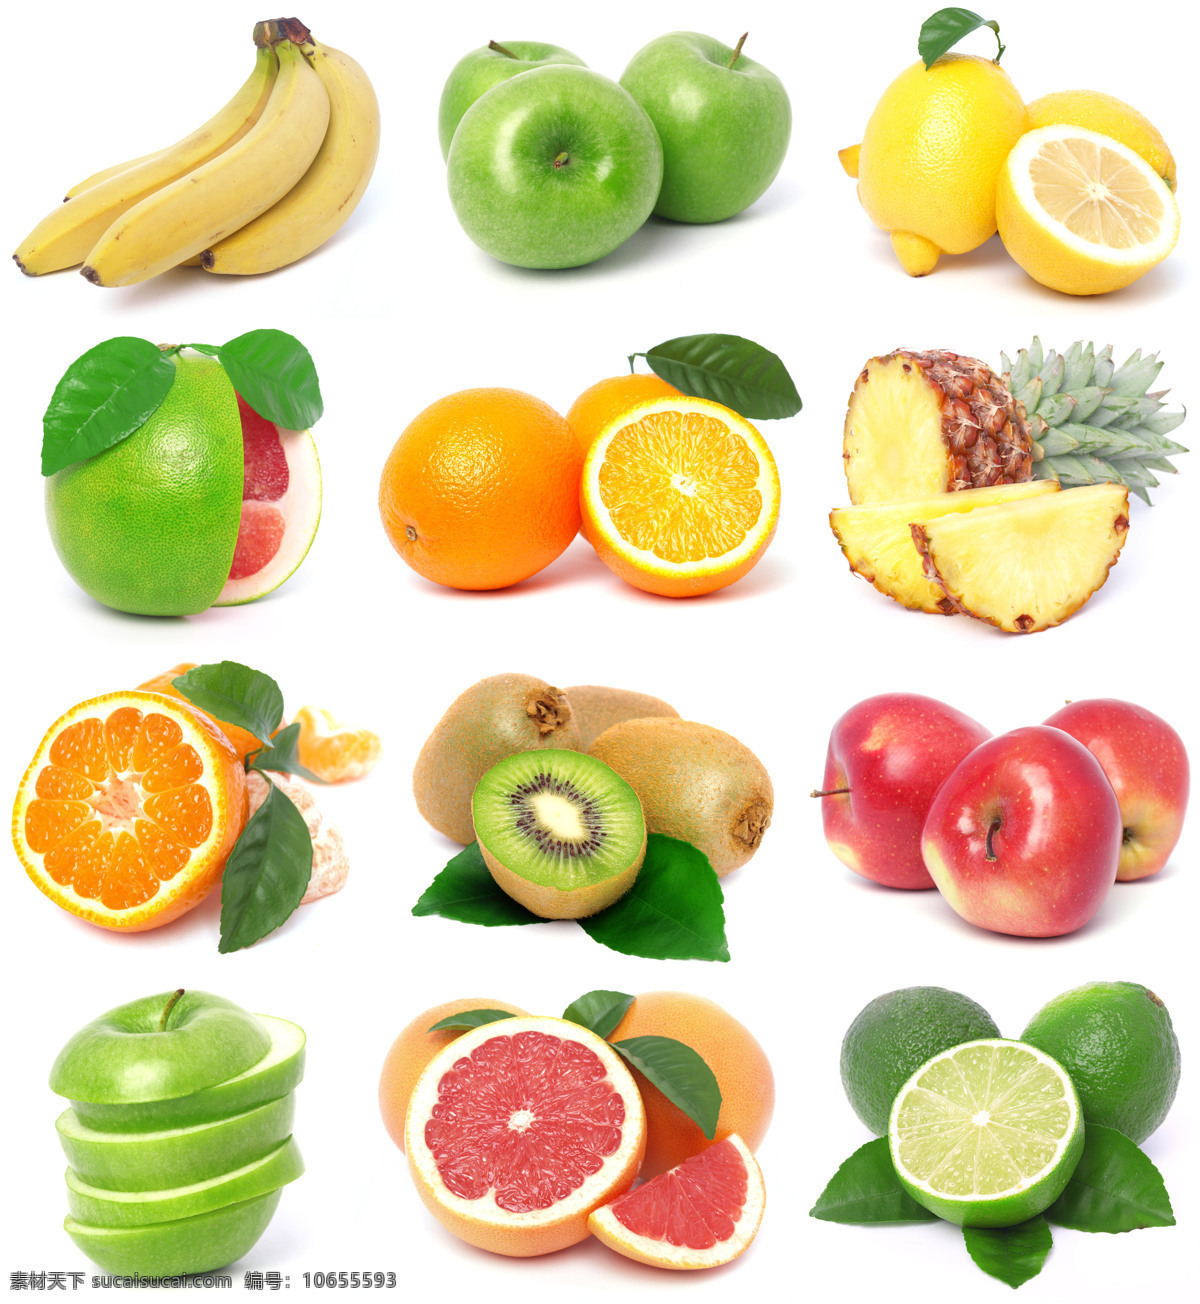 高清 水果 香蕉 苹果 柠檬 橙子 菠萝 猕猴桃 新鲜水果 水果摄影 水果广告 食物 水果图片 餐饮美食